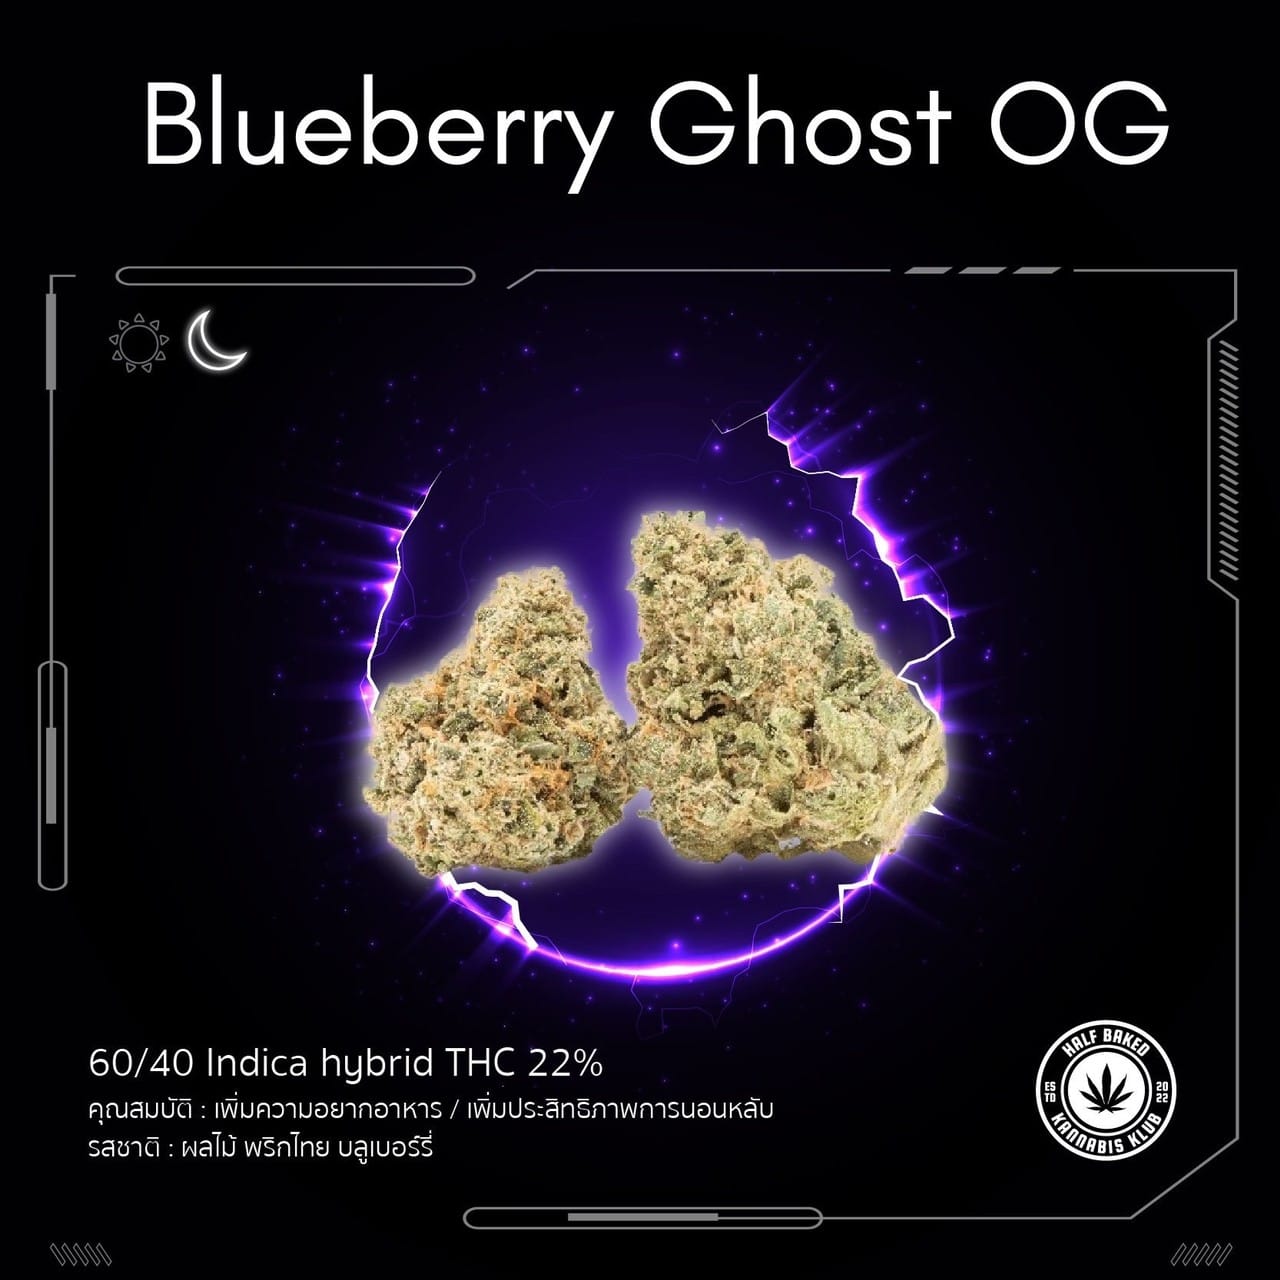 Blueberry Ghost OG